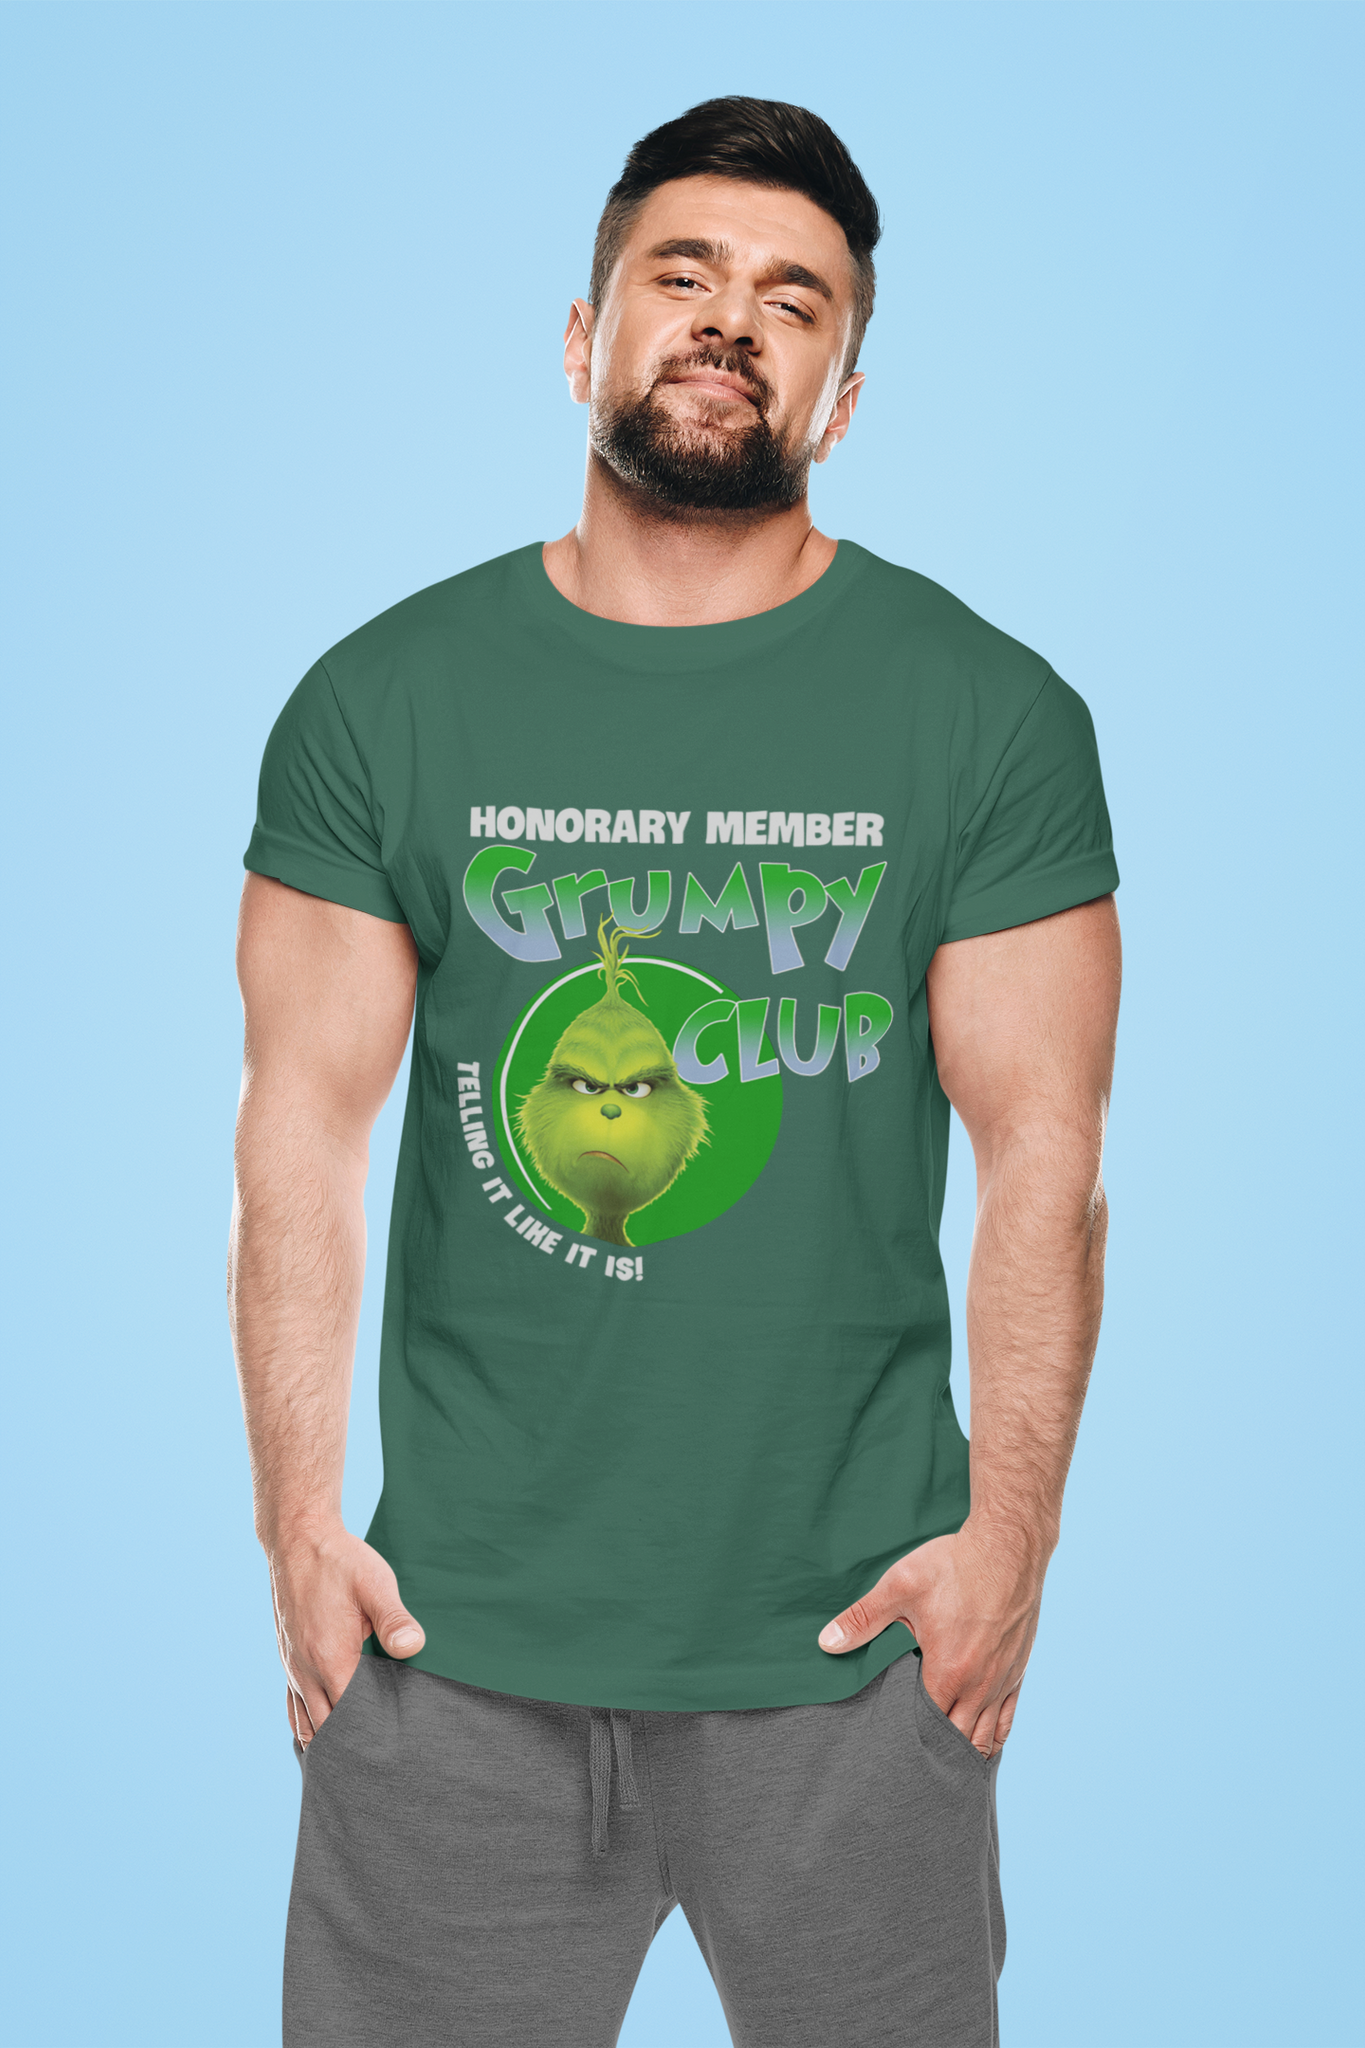 Grinch T Shirt, Honorary Member Grumpy Club Tshirt, Christmas Movie Shirt, Christmas Gifts